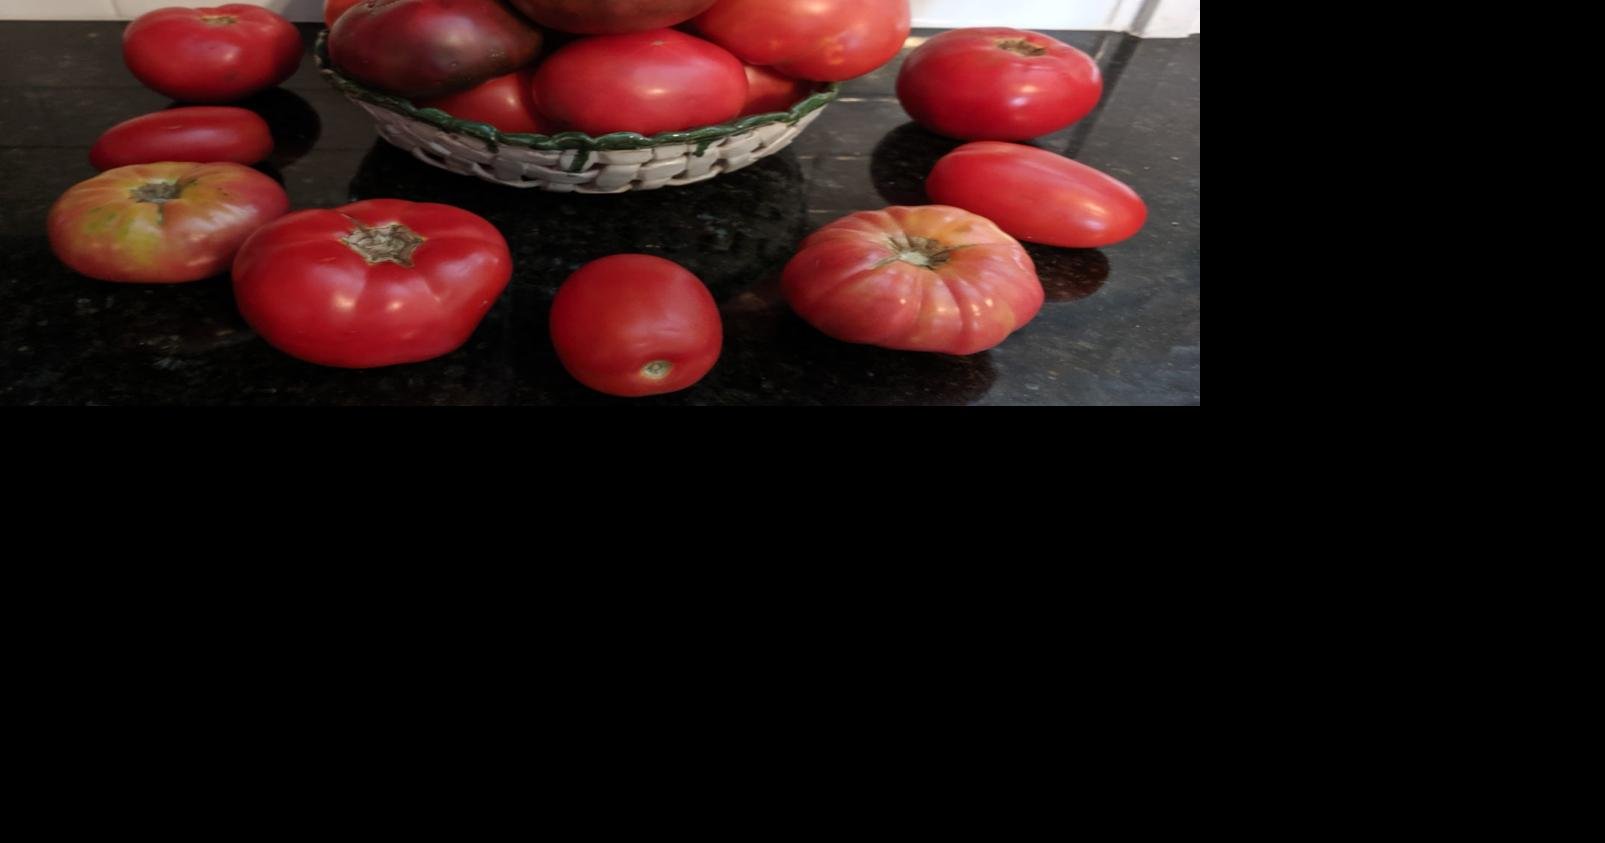 Buy 100 pcs Rare Blue Tomato Multi-color Tomato Cherry Tomatoes